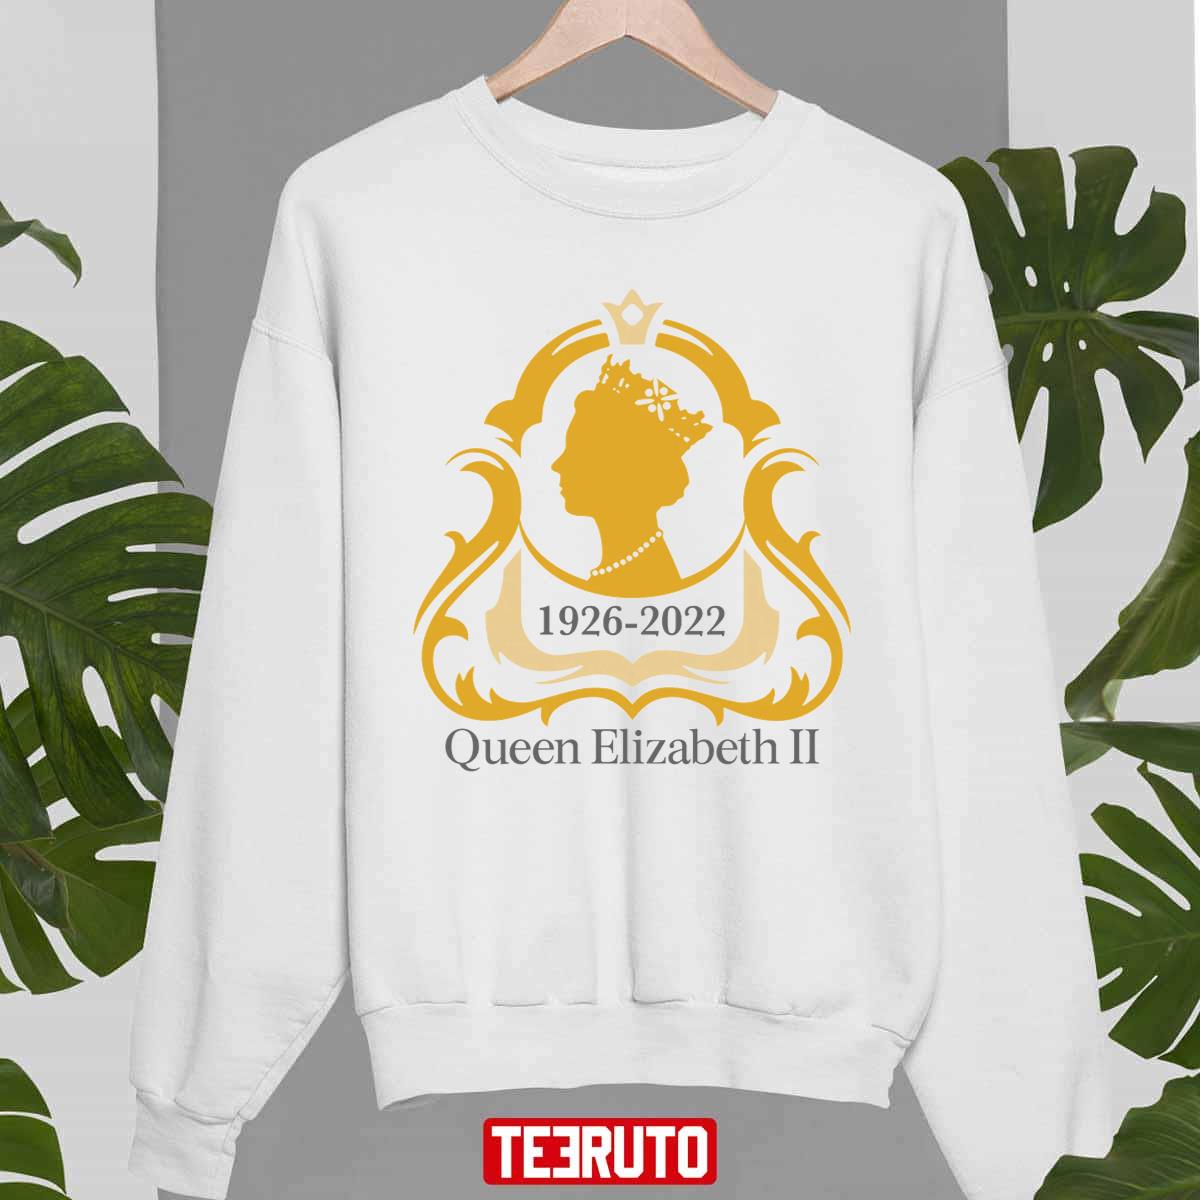 Her Majesty Queen Elizabeth II Unisex T-Shirt